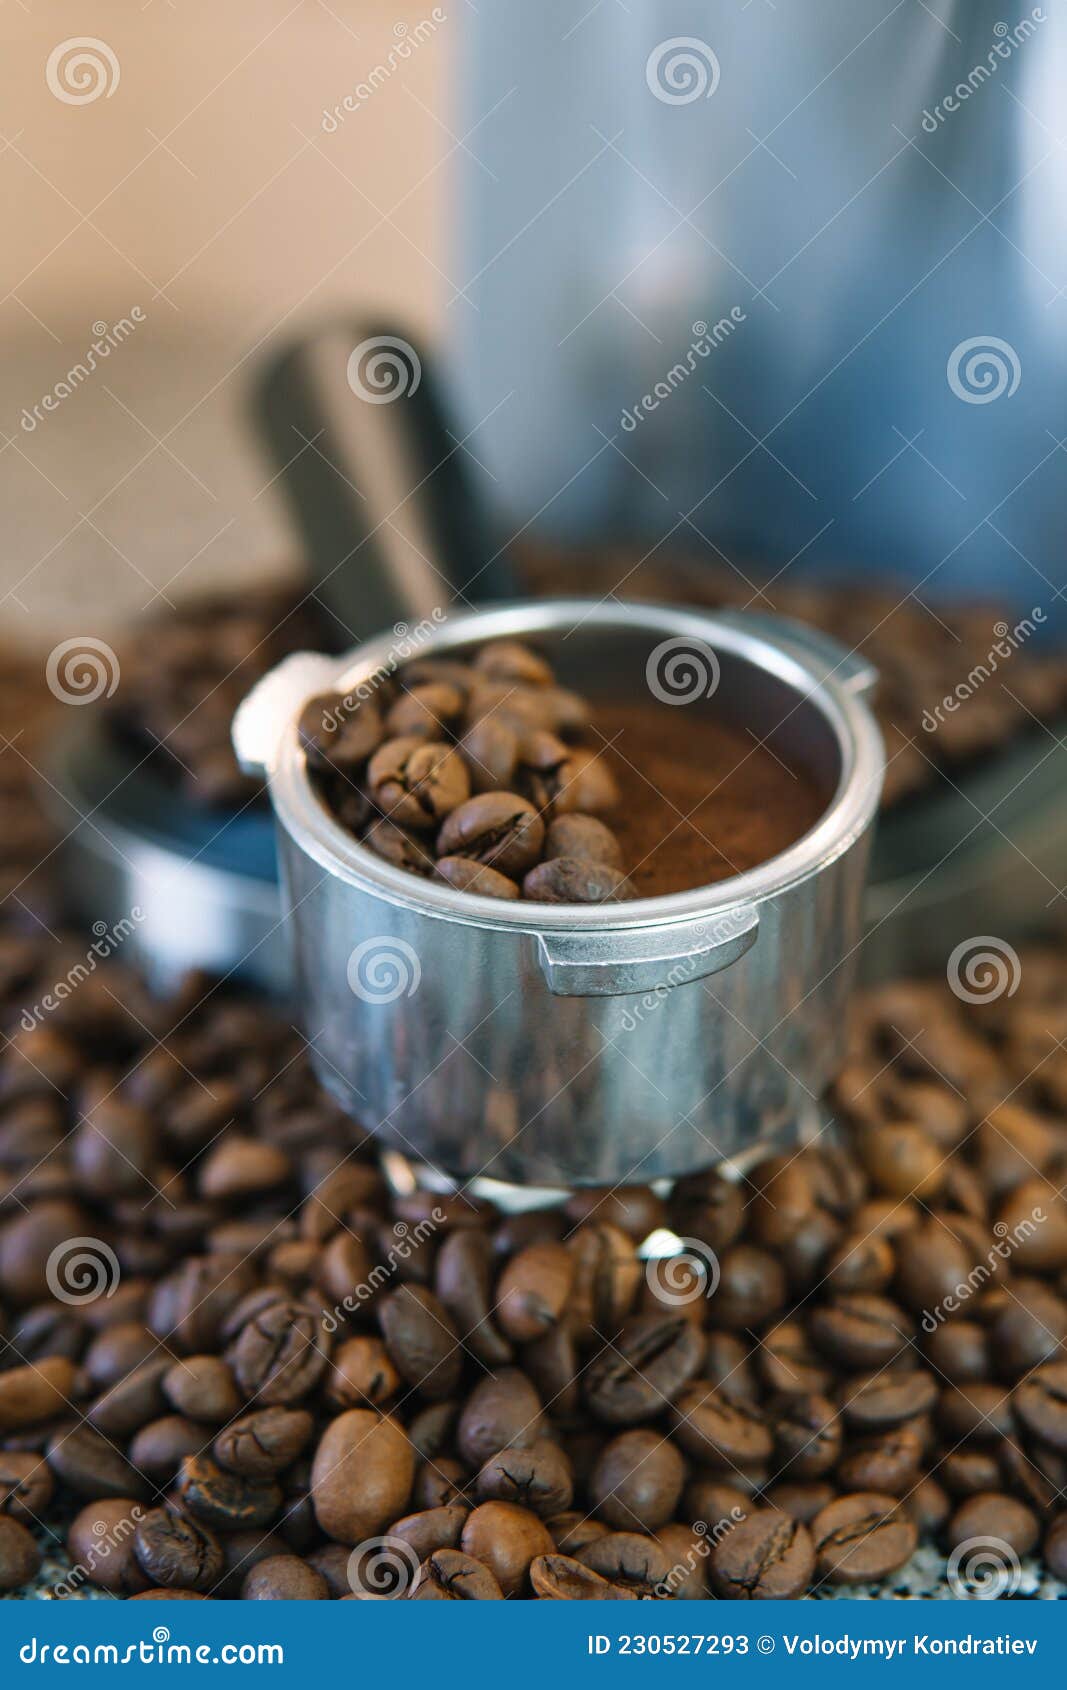 https://thumbs.dreamstime.com/z/soporte-de-filtro-cafetera-espresso-con-granos-caf%C3%A9-en-la-mitad-est%C3%A1n-los-enteros-y-otra-el-suelo-mashina-una-son-molido-230527293.jpg